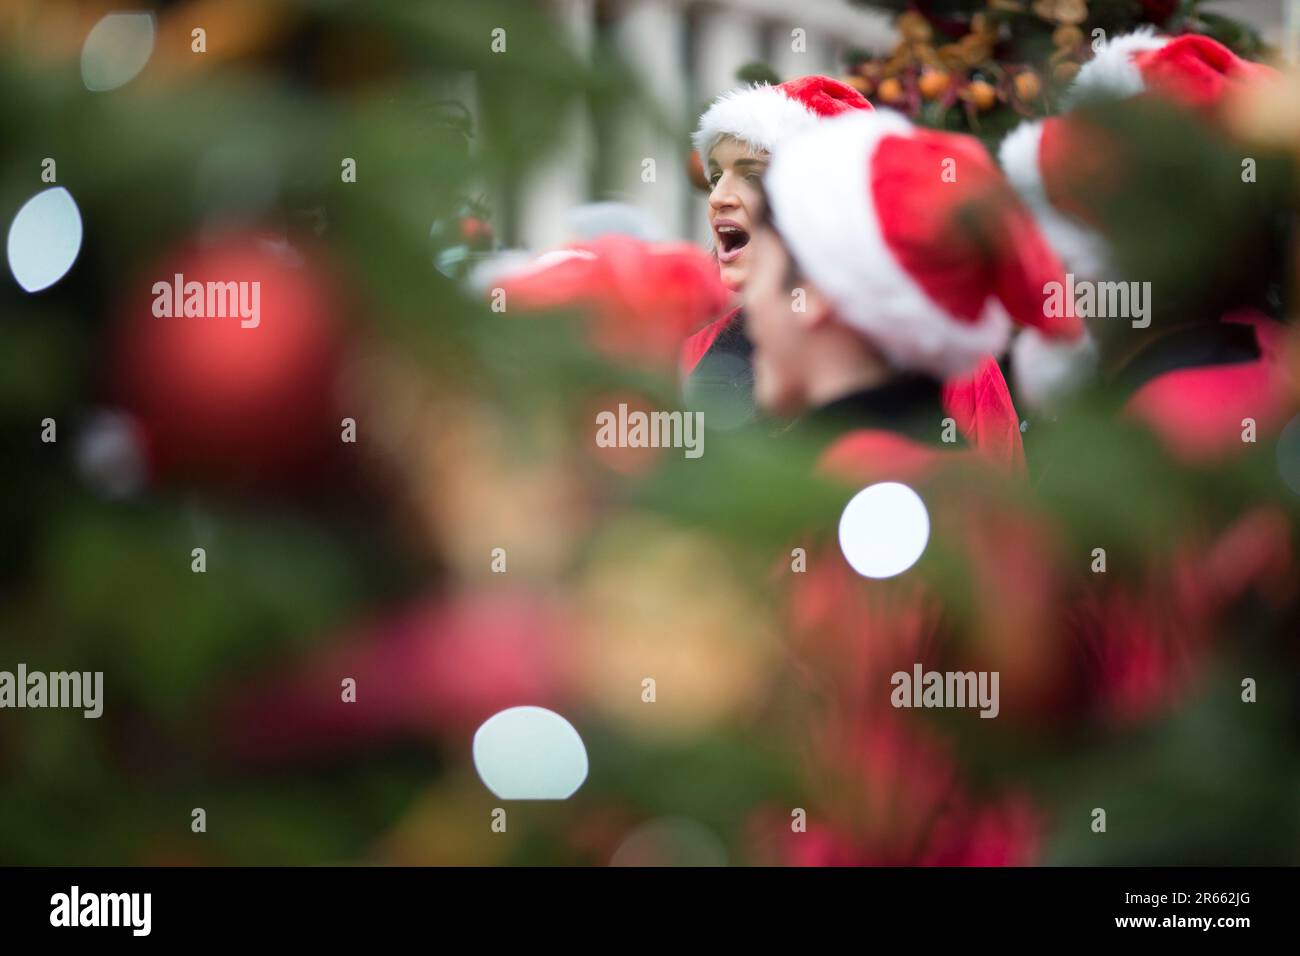 Les décorations et les tenues de Noël sont visibles dans le Covent Garden, dans le centre de Londres. Banque D'Images